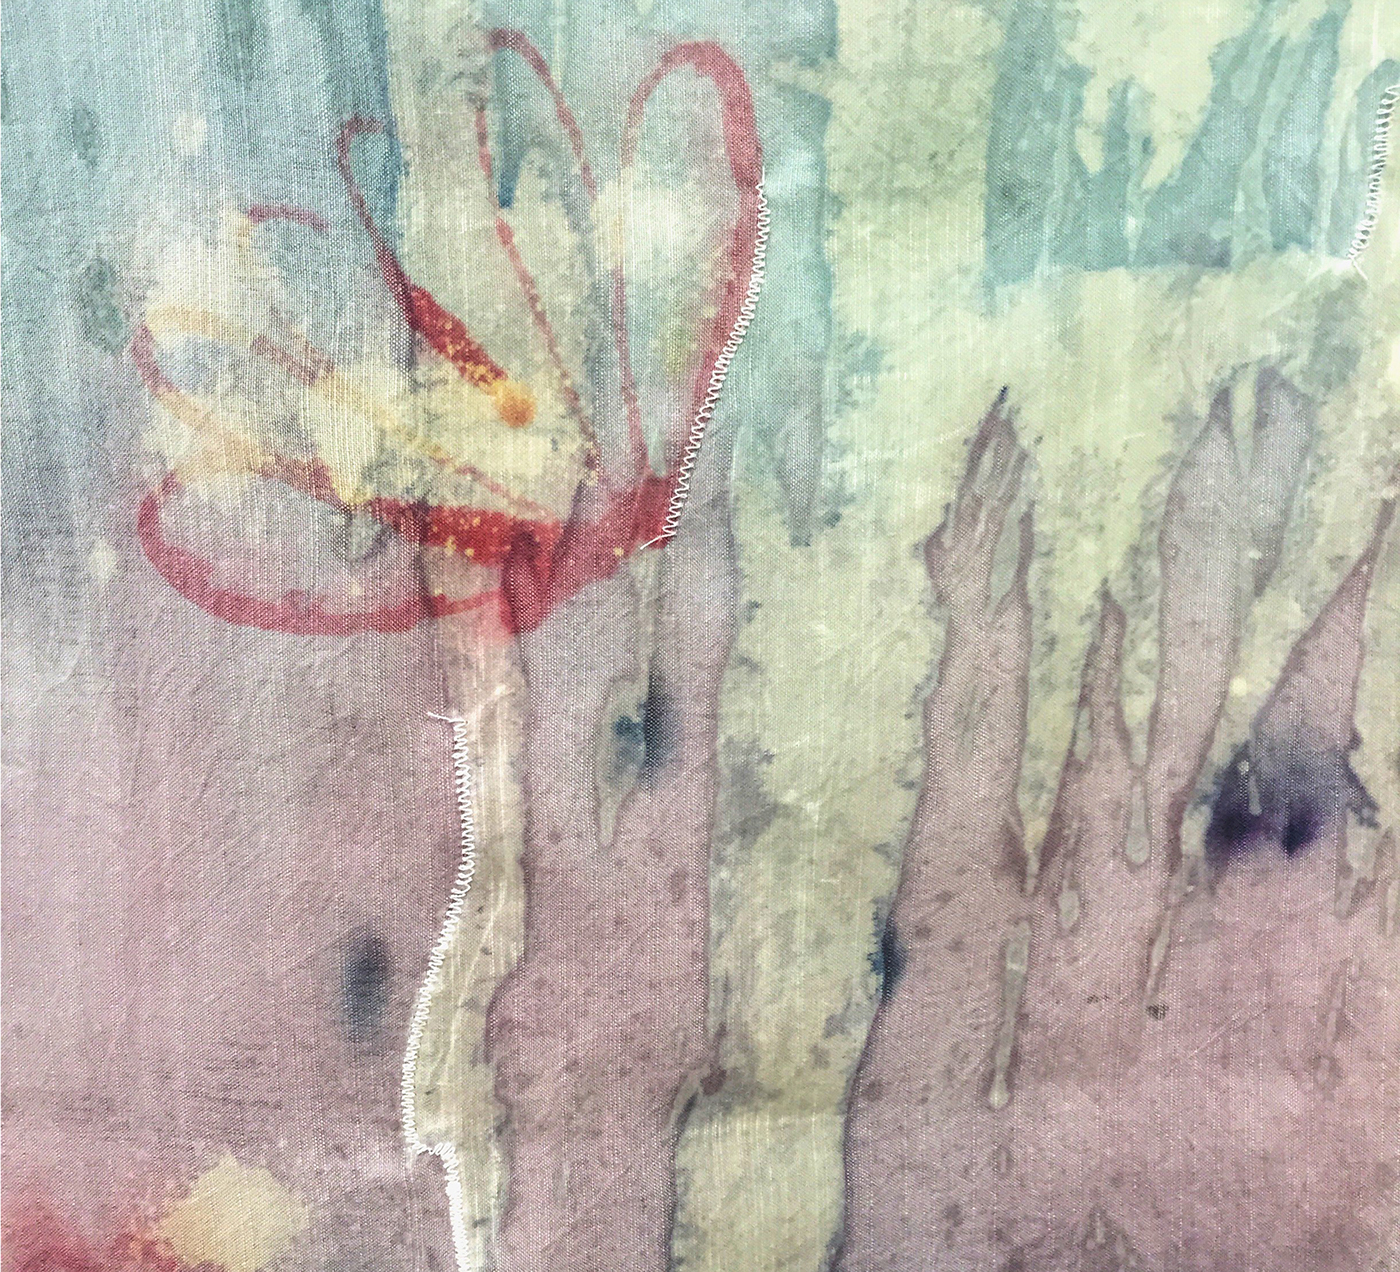 dye fibers wall hanging tapestry poppy Flowers soy wax resist dye